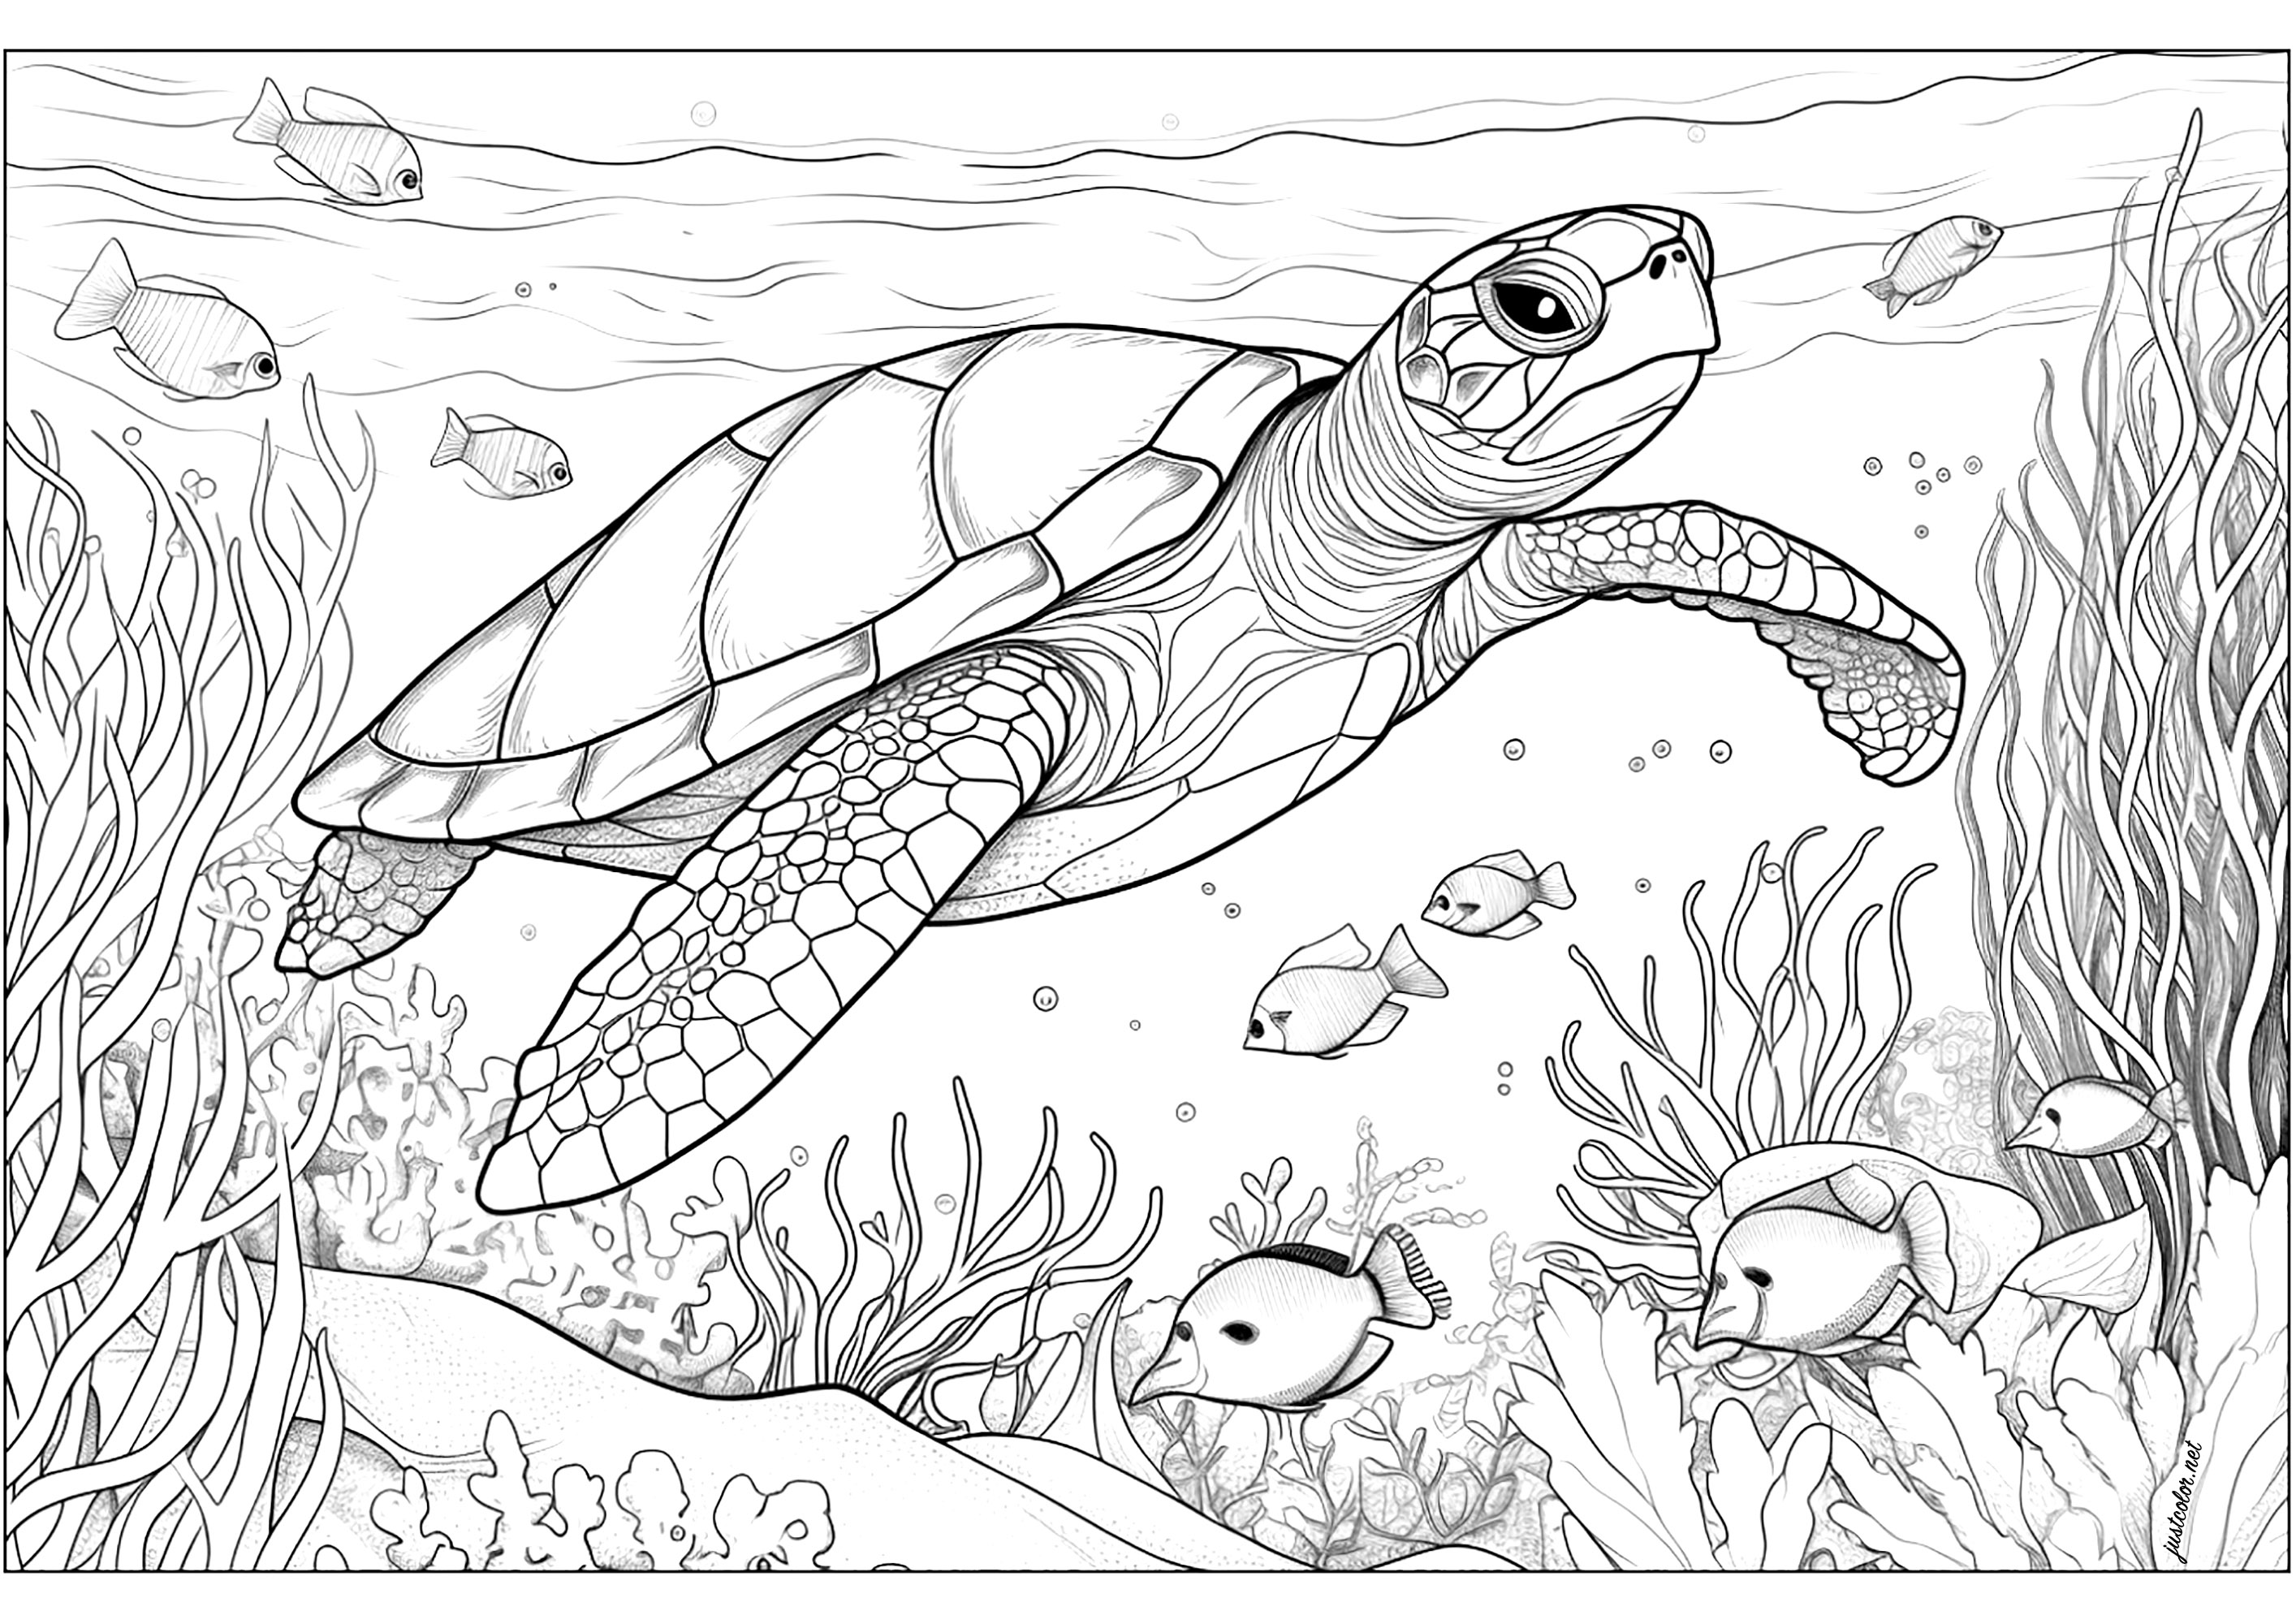 Tartaruga marina con alghe e pesci. Le alghe sono sparse e ondeggiano lentamente intorno alla tartaruga, mentre i pesci nuotano felici intorno a lei.